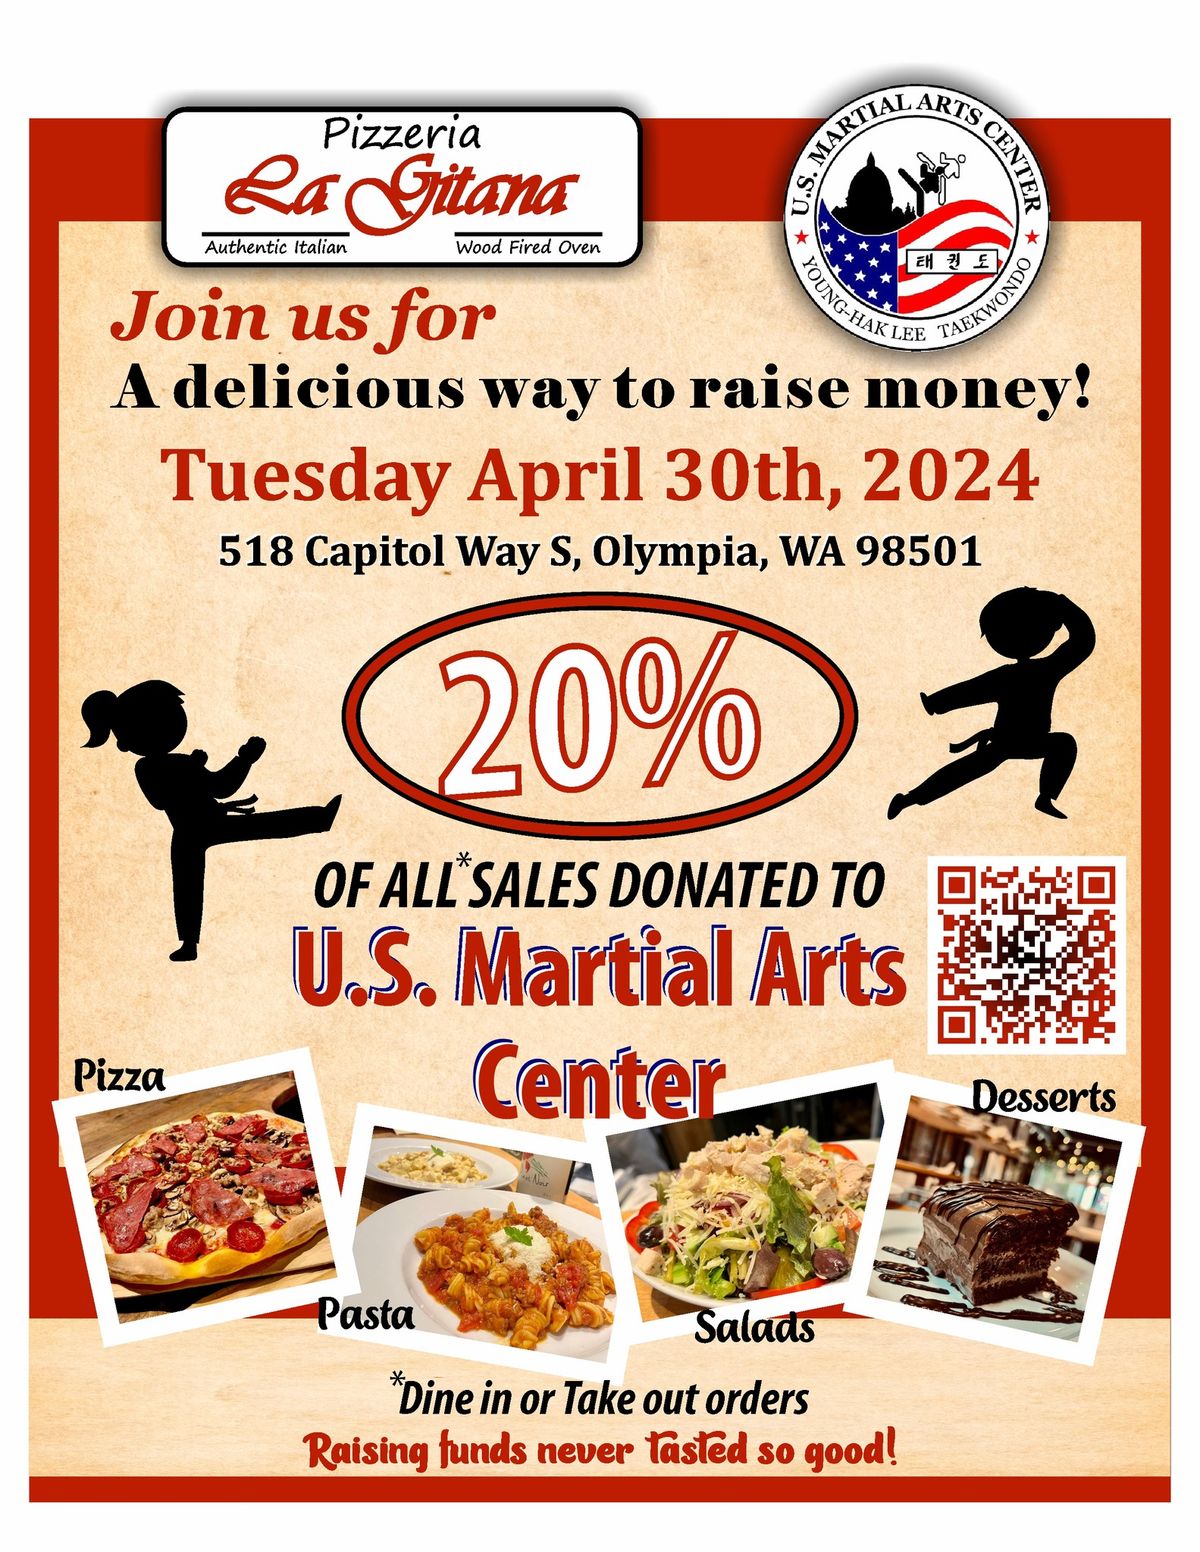 Fundraiser for U.S. Martial Arts Center (USMAC)